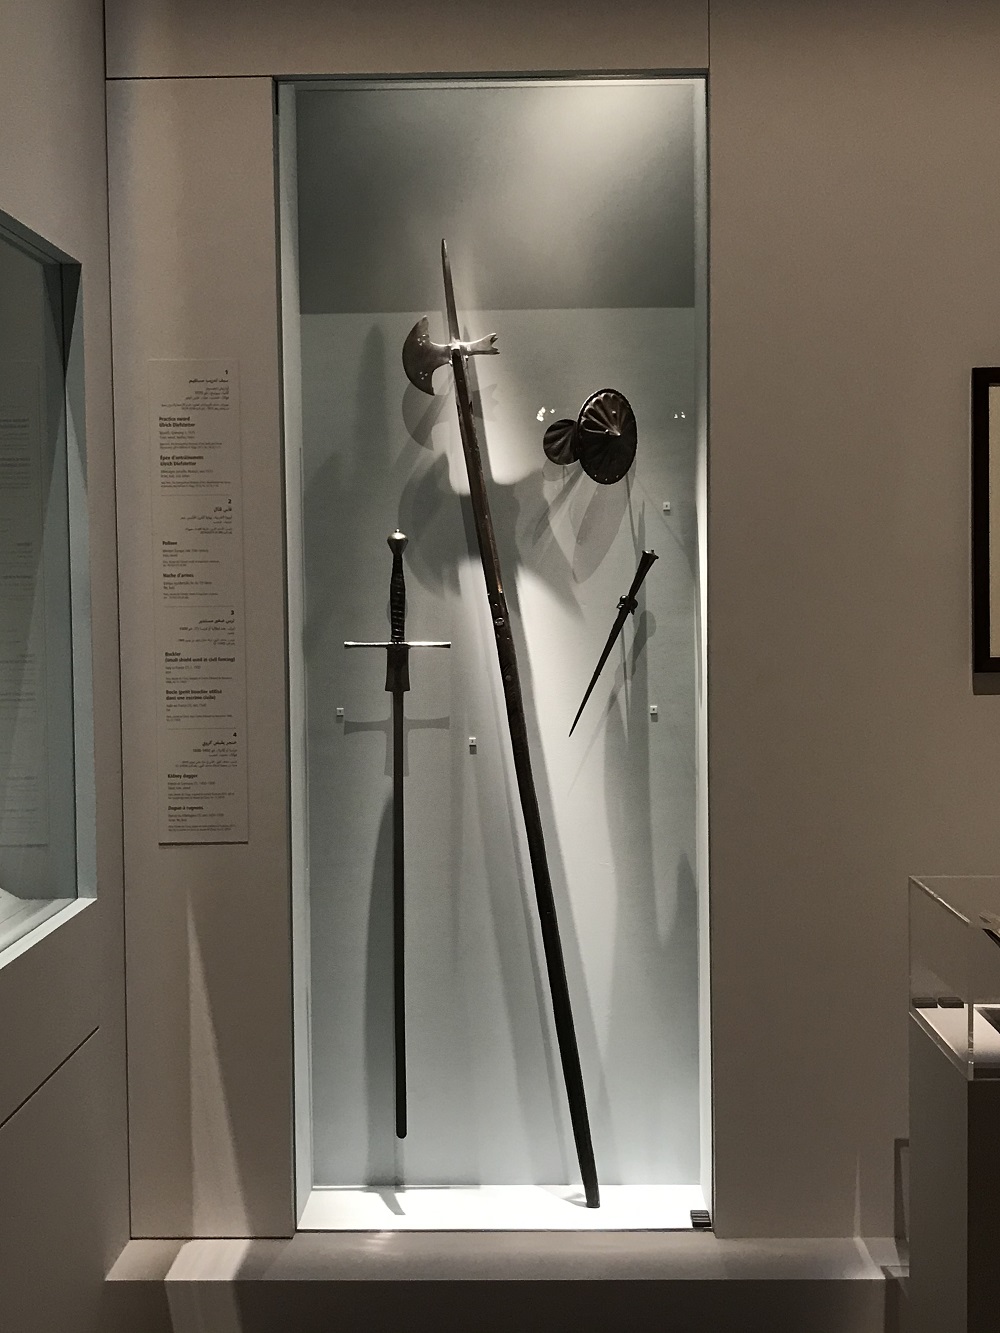 أسلحة الدفاع فى معرض الفروسية فى متحف اللوفر أبوظبى